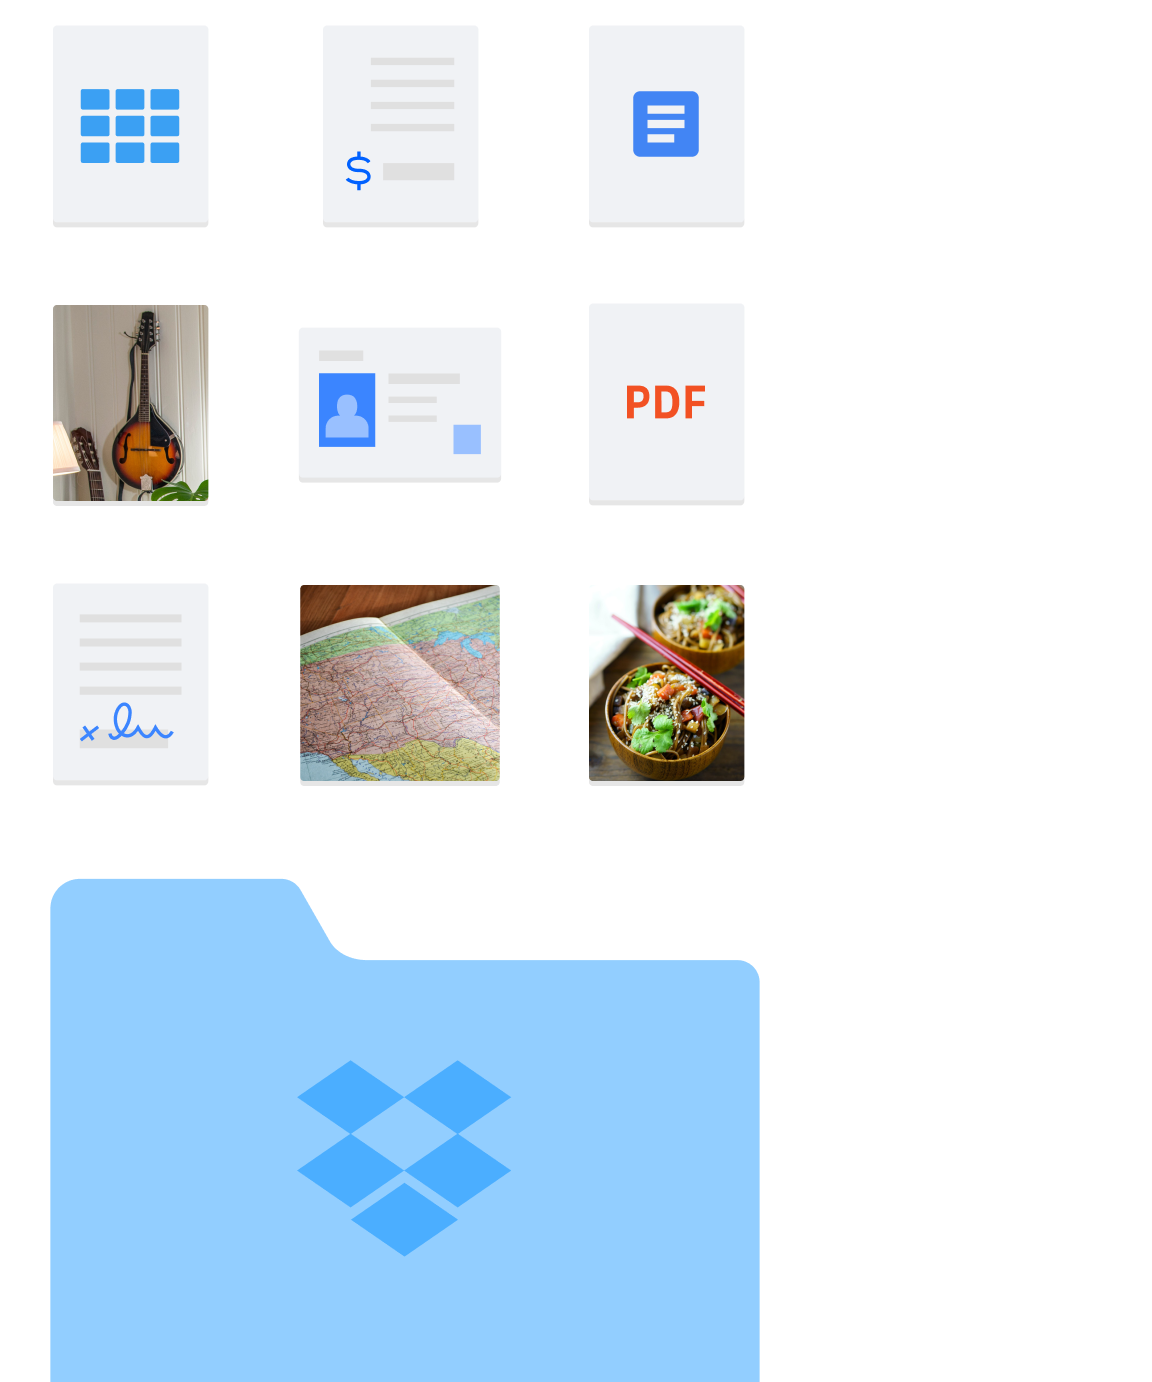 รูปภาพของโฟลเดอร์และไฟล์ประเภทต่างๆ ที่อยู่ใน Dropbox เช่น รูปภาพและเอกสาร